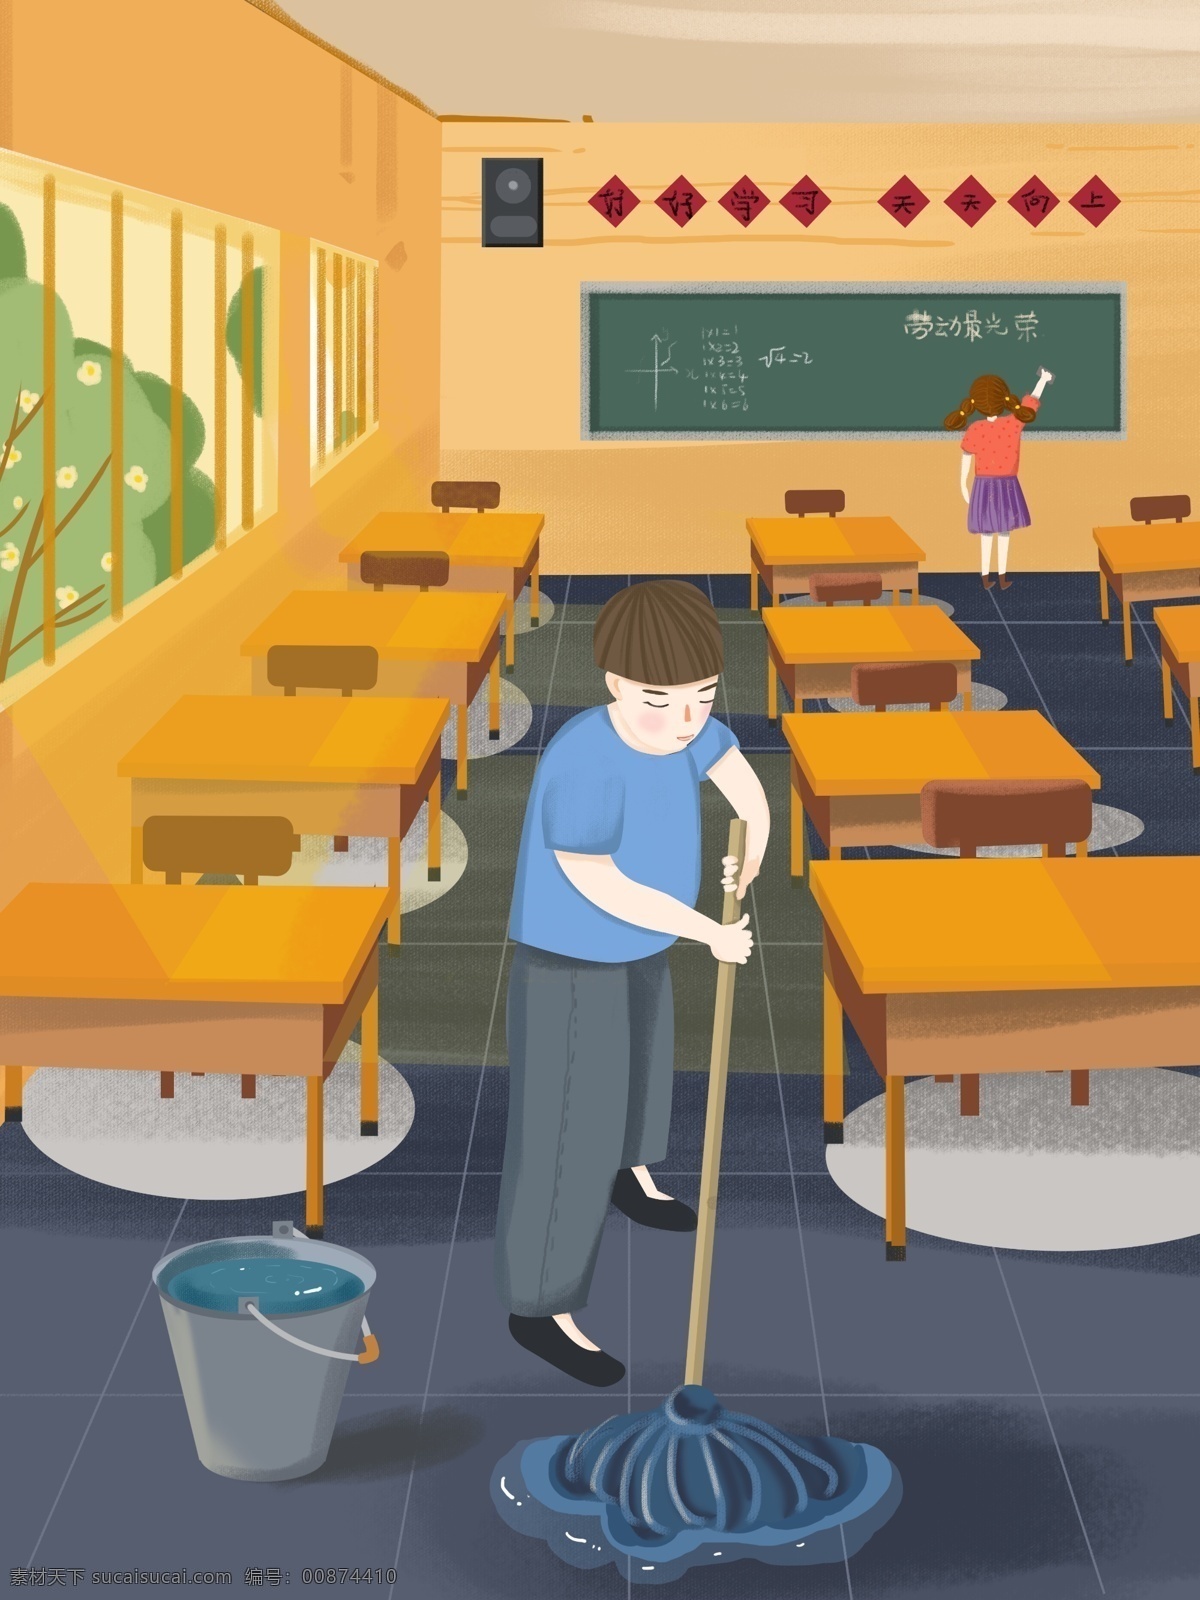 男孩 黑板 教室 班级 劳动 场景 小 清新 插画 教室班级 课桌 打扫 同学 大扫除